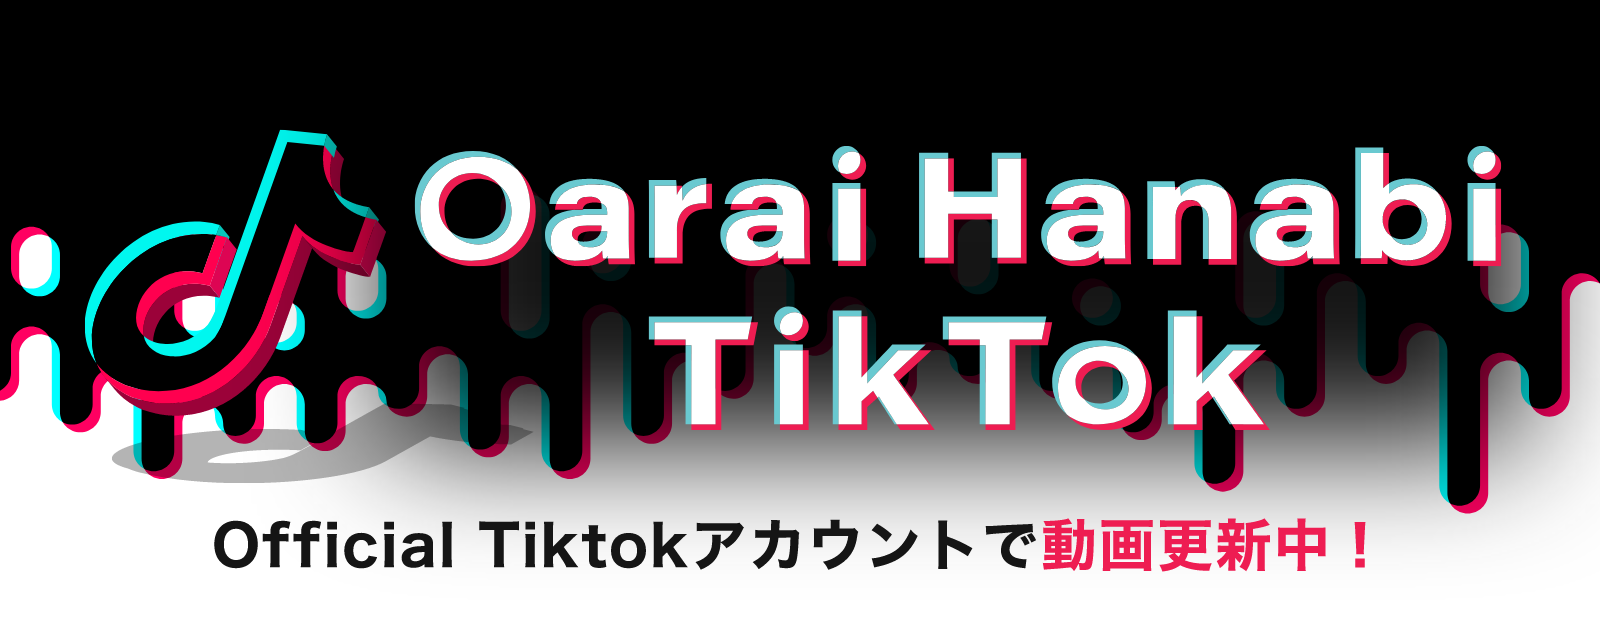 Oarai Hanabi TikTok | Official Tiktokアカウントで動画更新中！